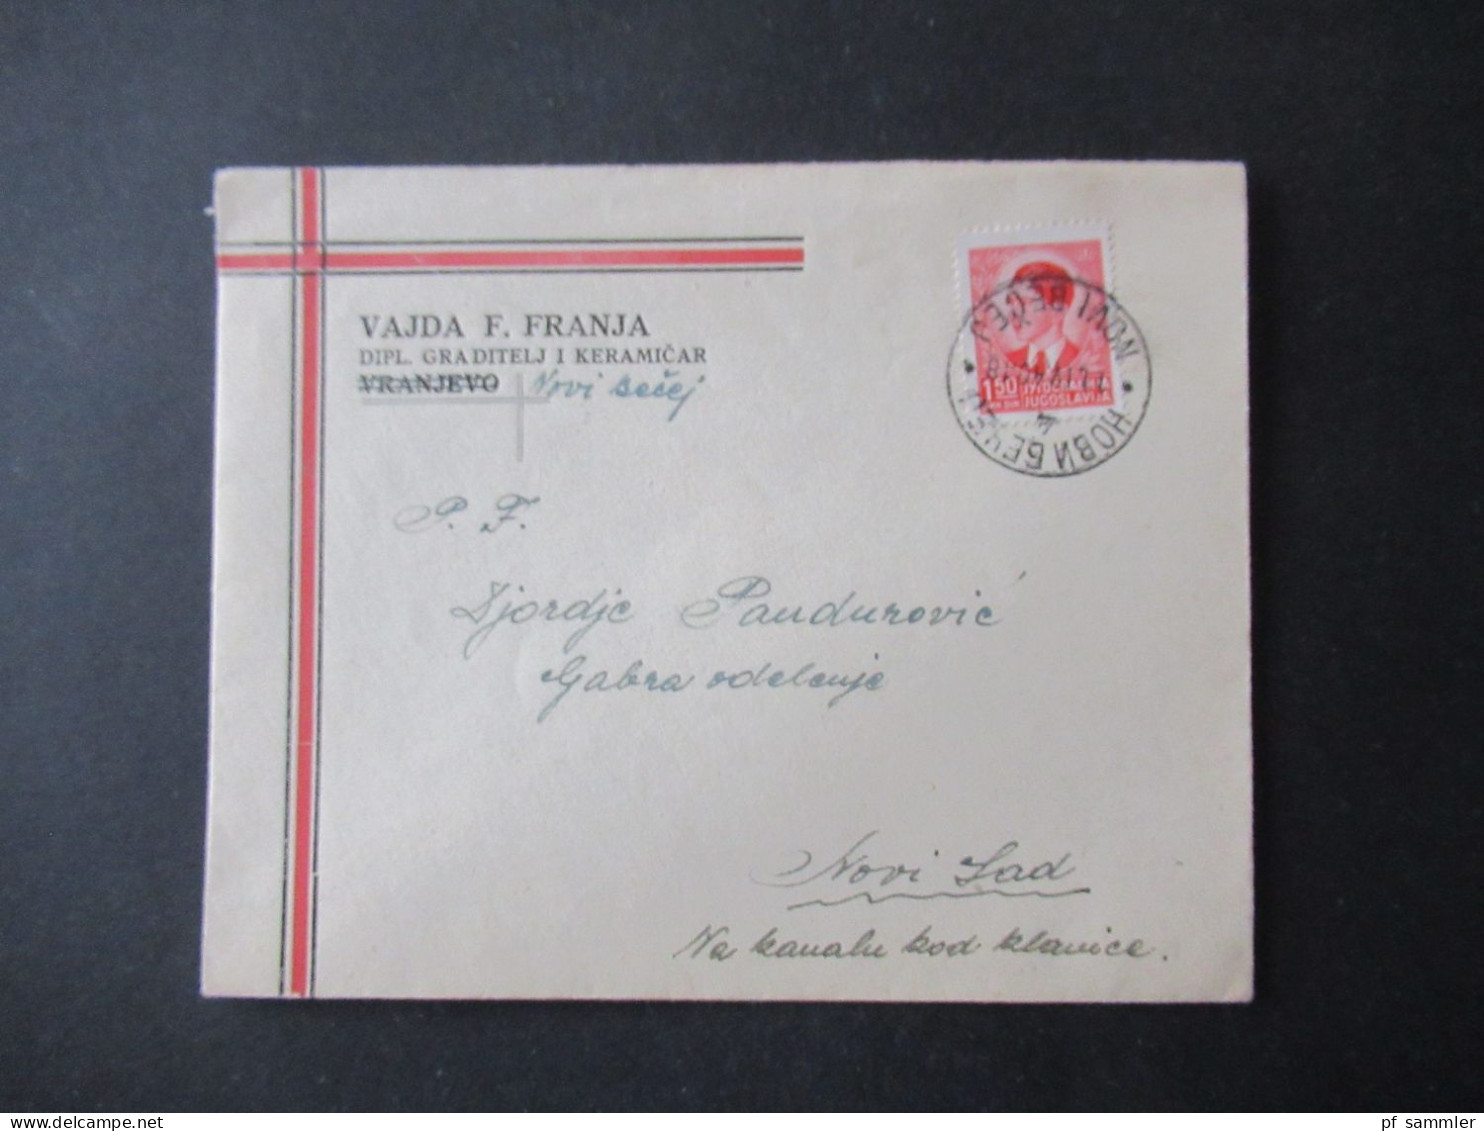 Jugoslawien 1940 Freimarken König Peter II. Mi.Nr.396 EF Dekorativer Umschlag Vajda F. Franja Vranjevo Durchgestrichen - Storia Postale